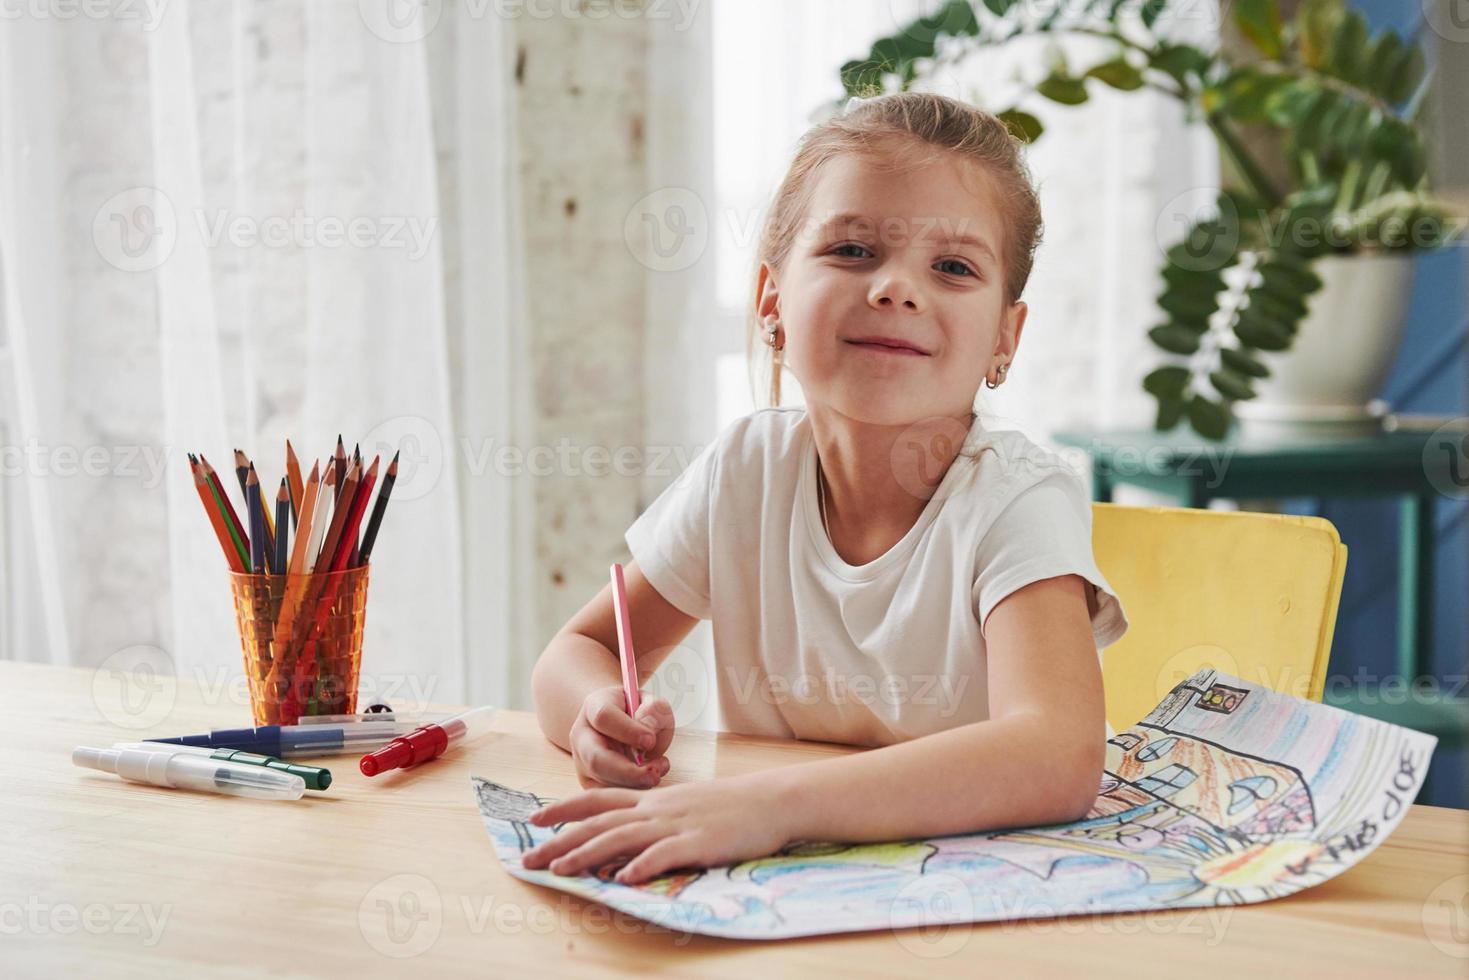 guardando nella telecamera con sguardo soddisfatto. la bambina carina della scuola d'arte disegna i suoi primi dipinti con matite e pennarelli foto